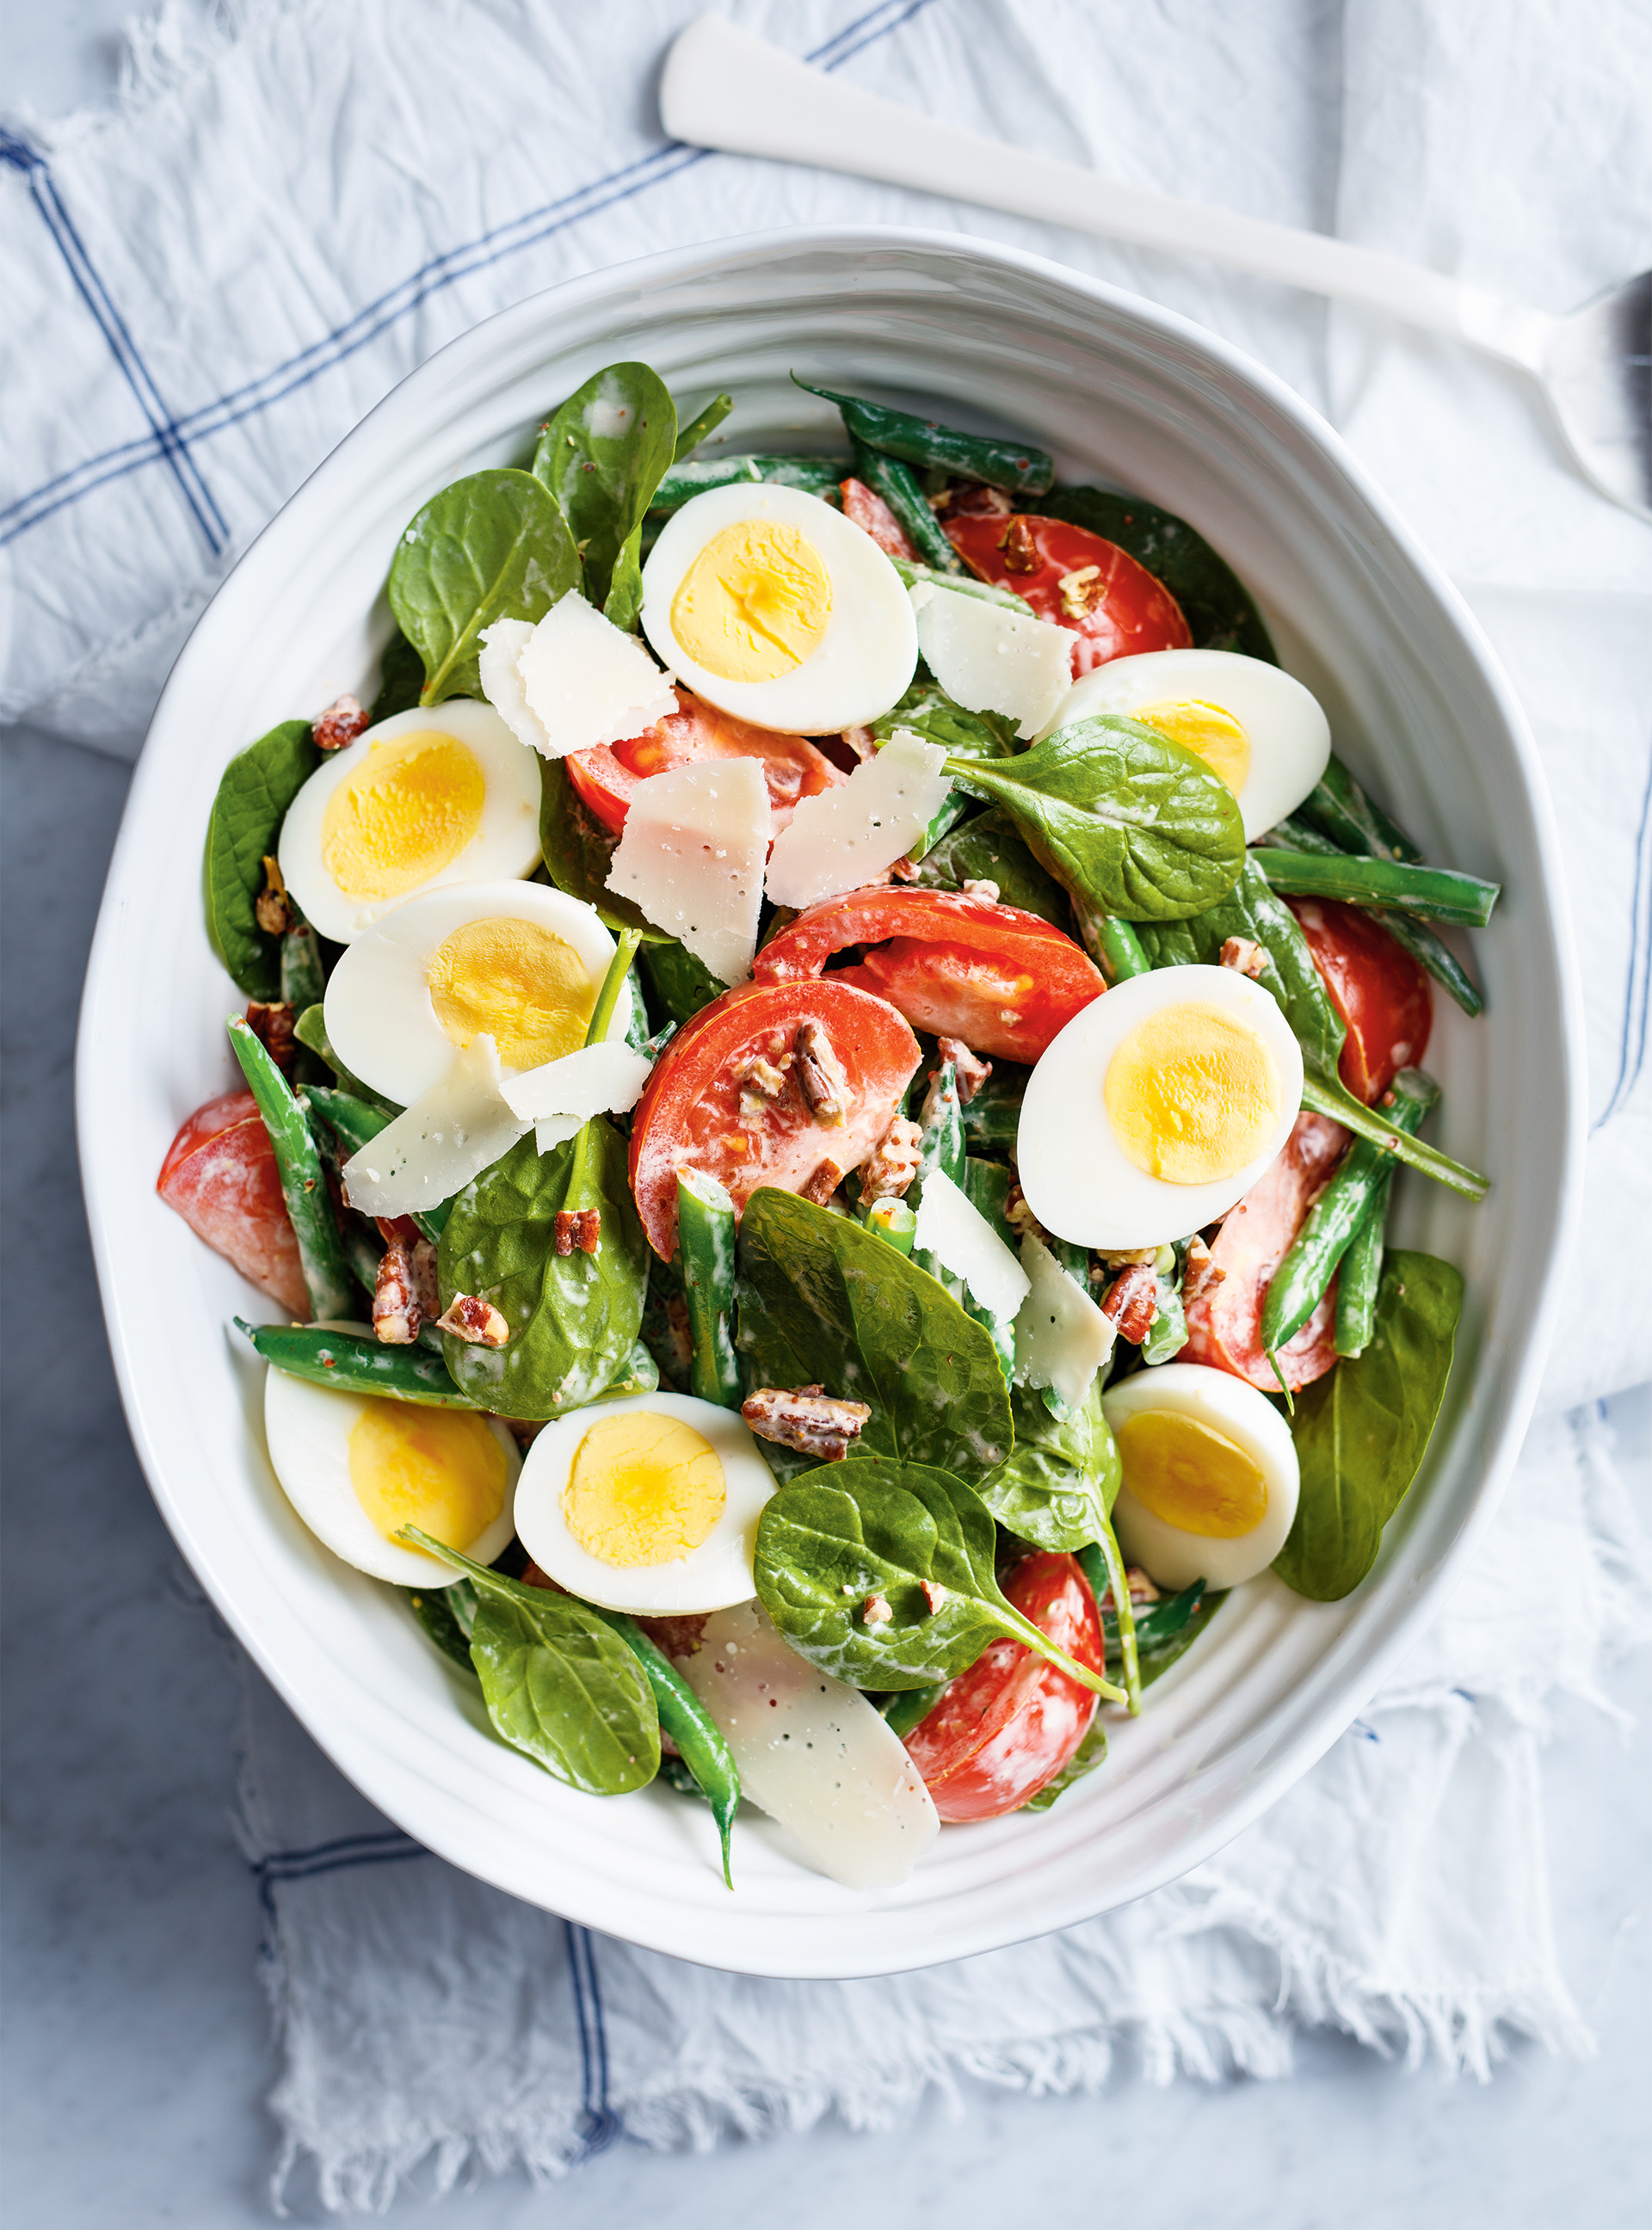 Salade-repas aux haricots, tomates et œufs durs